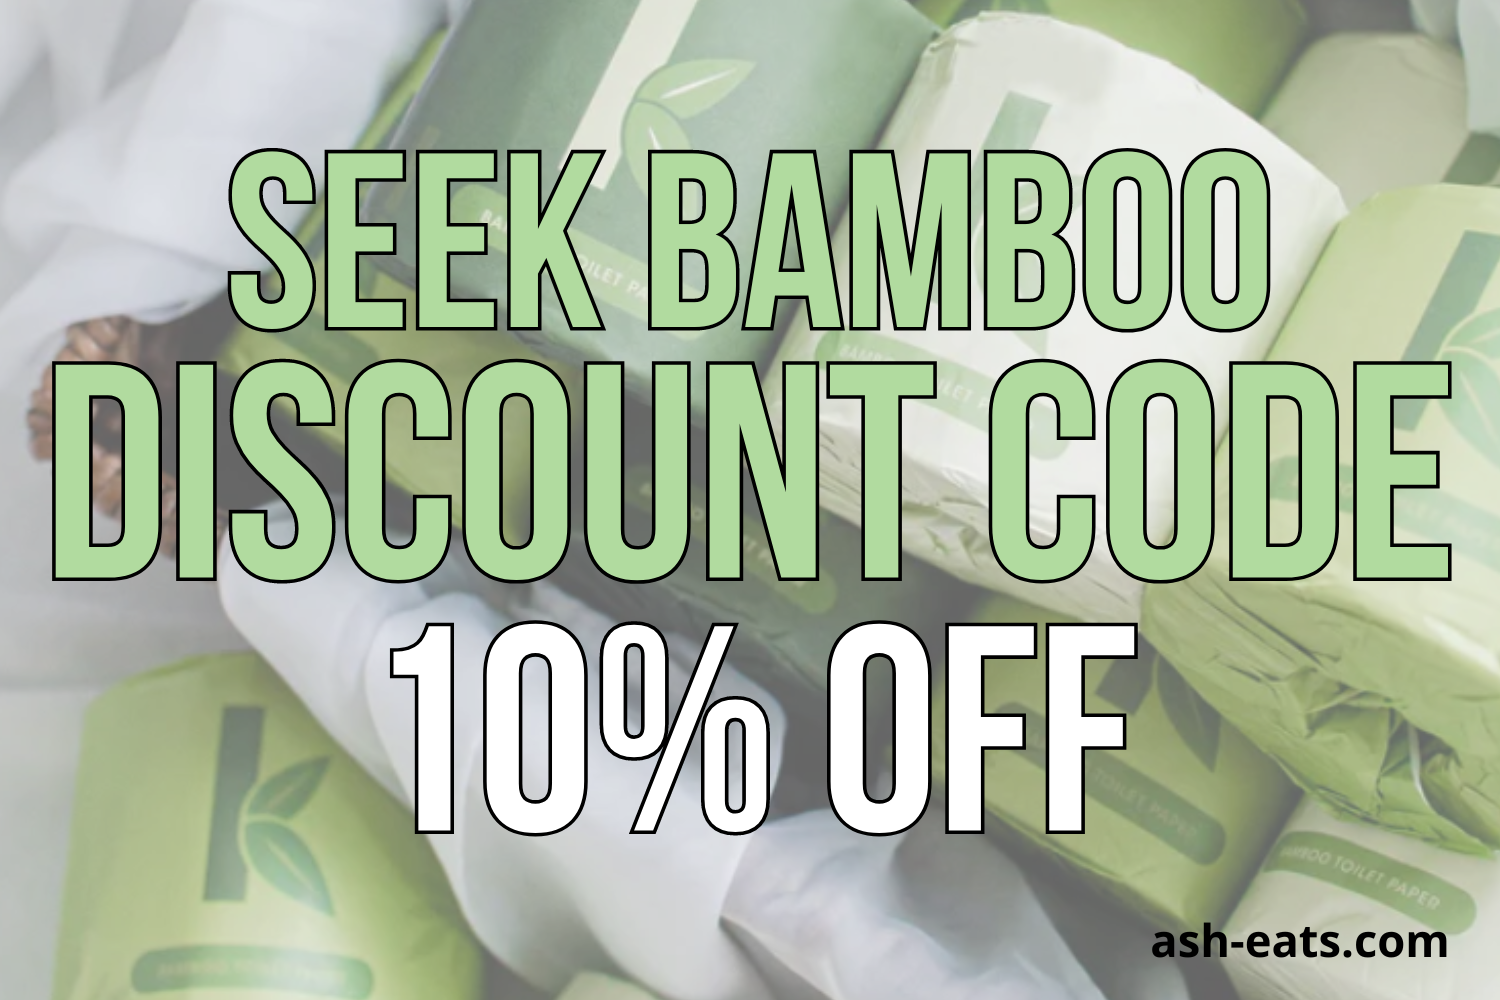 seek bamboo discount code